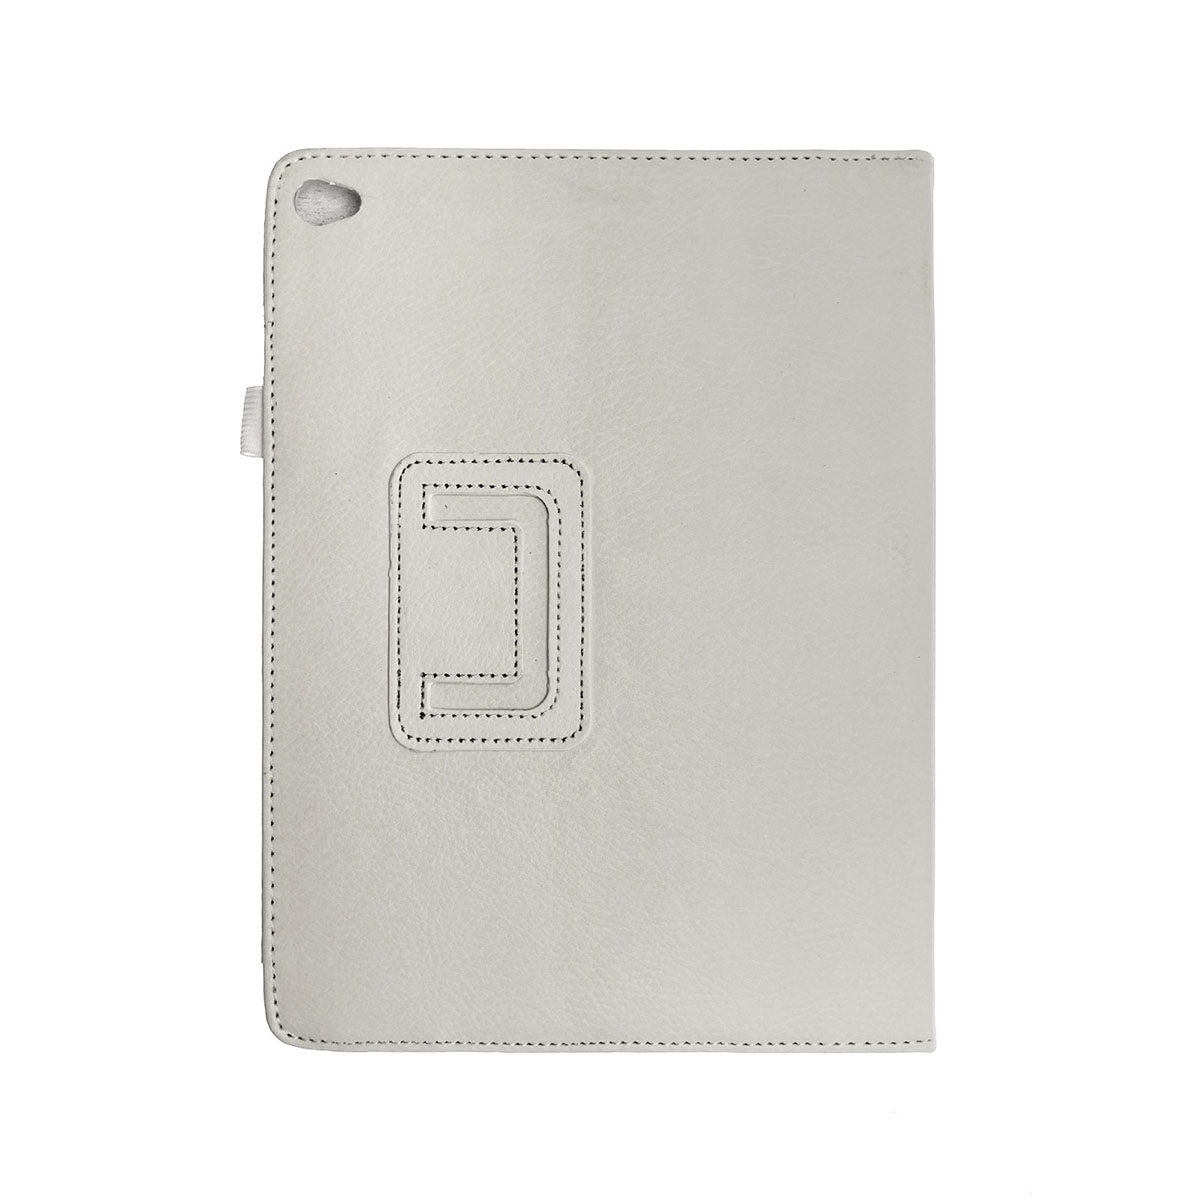 Чехол книжка для APPLE iPad Air 2, экокожа, цвет белый.